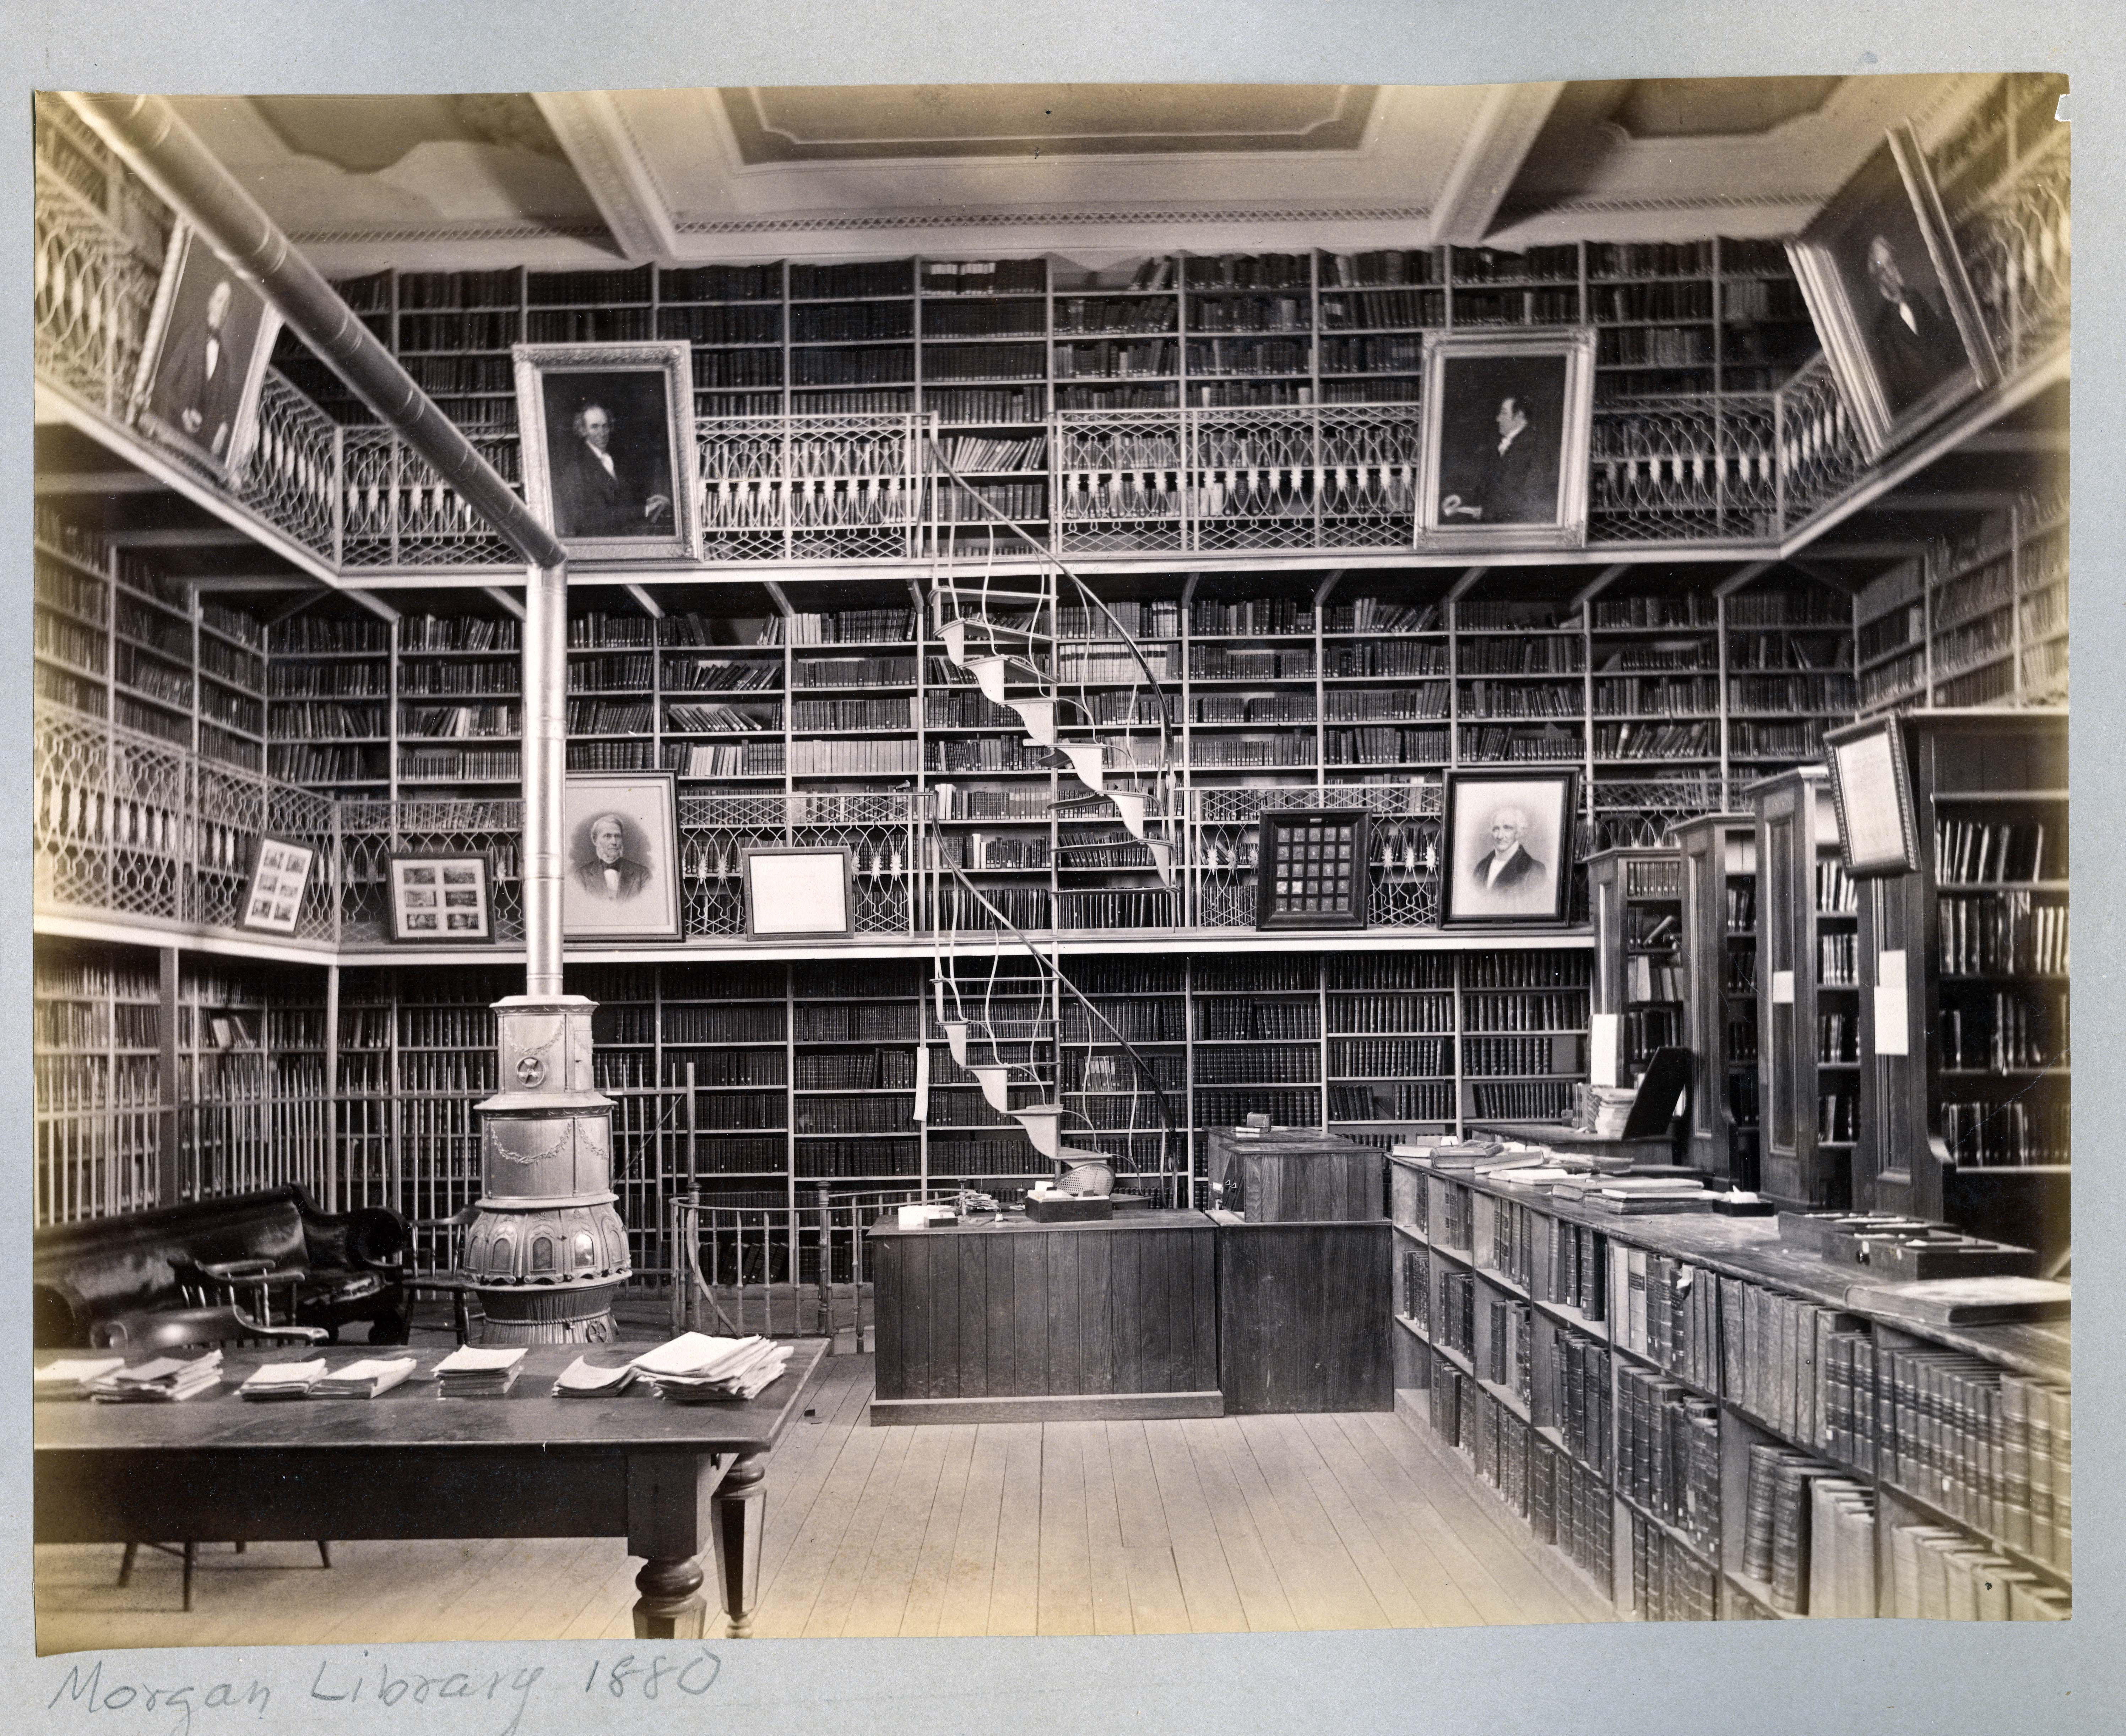 Morgan Library, ca. 1880